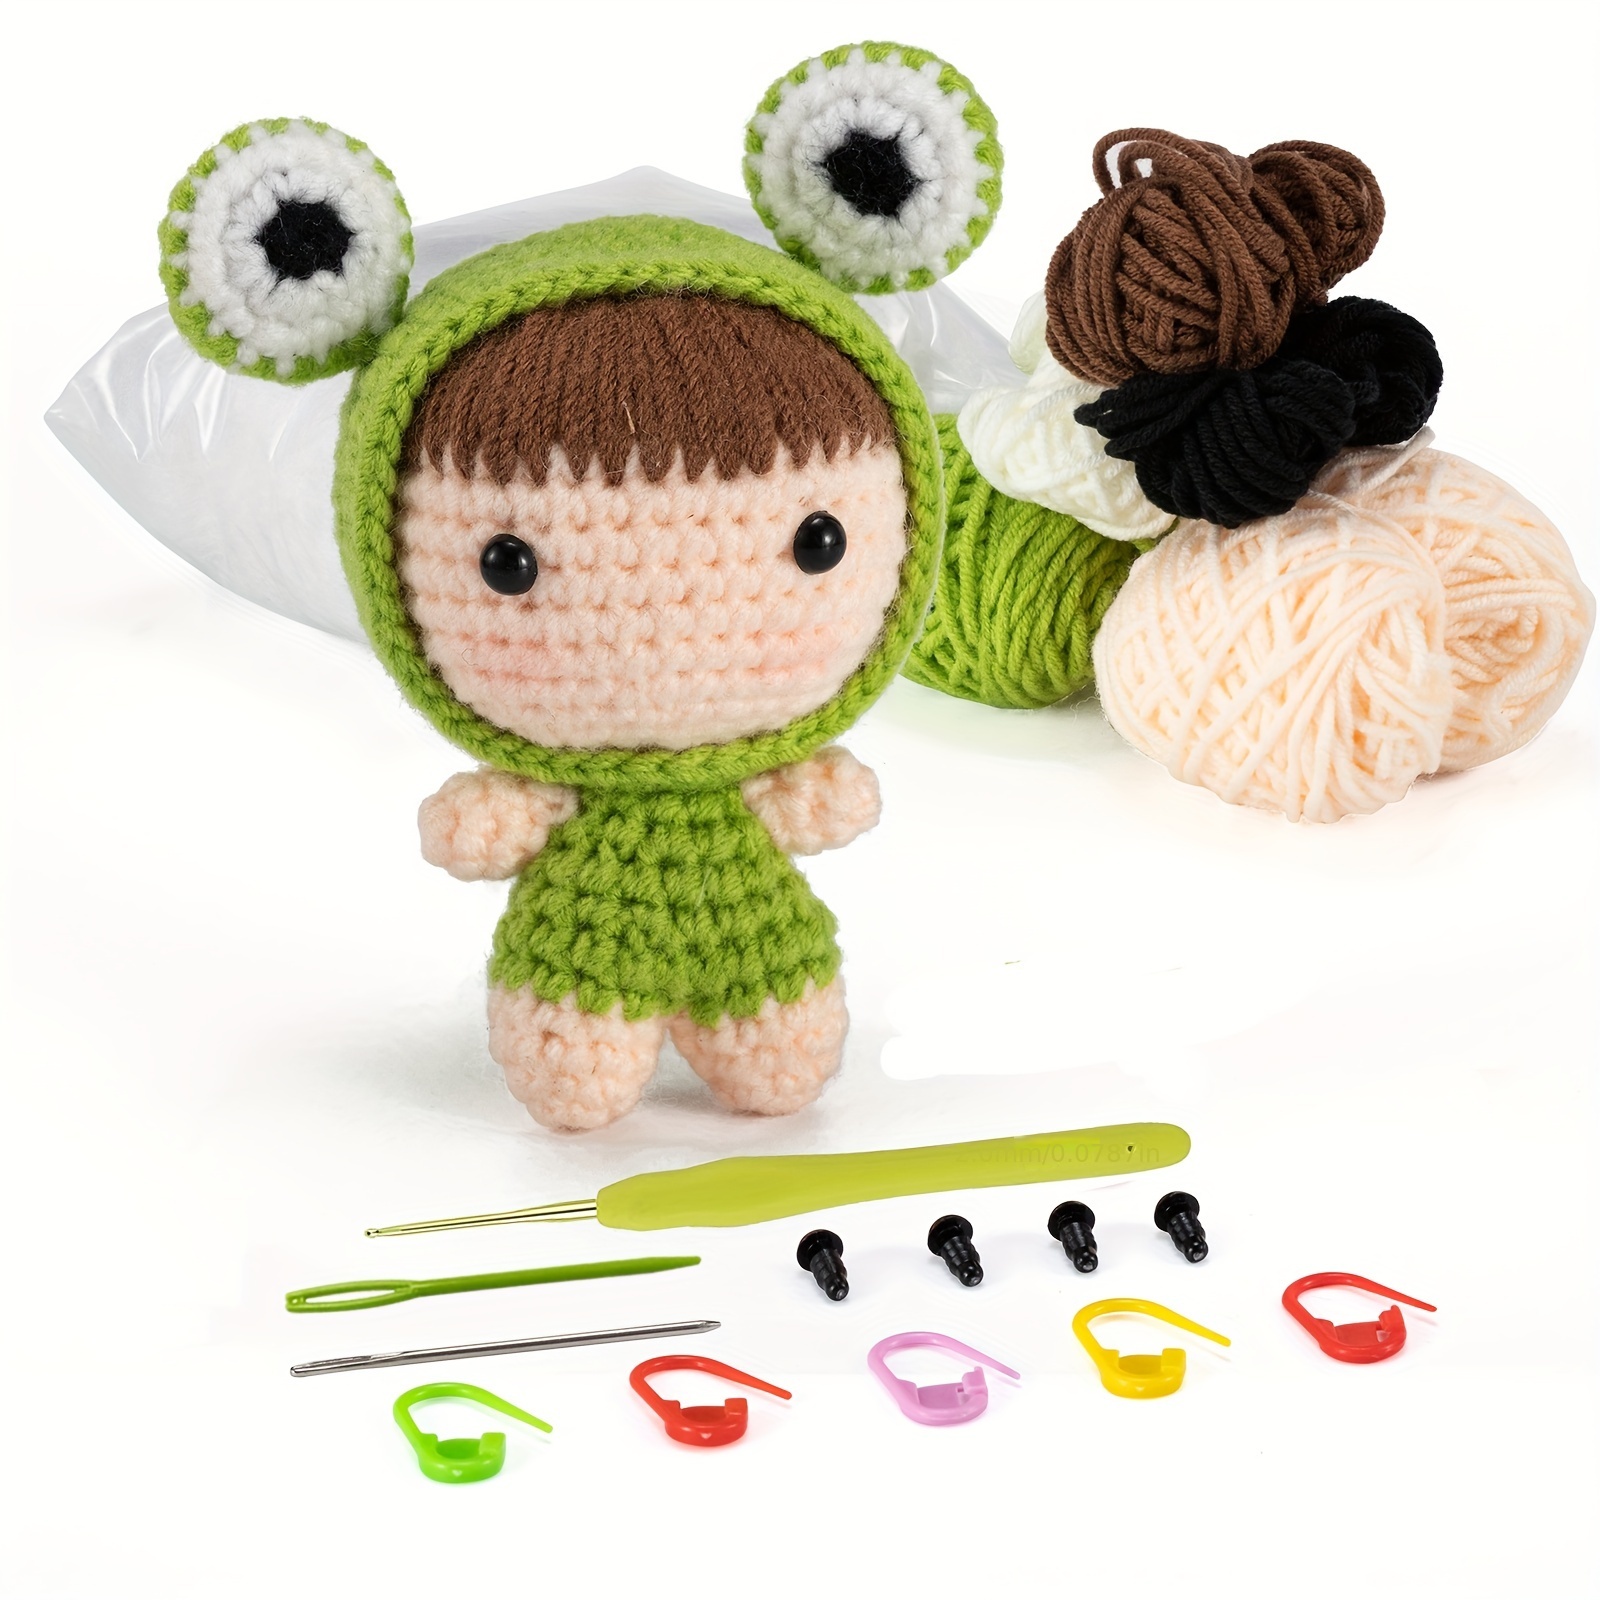 Kit de crochet con todo lo que necesitas para aprender a tejer con Luk –  Tamatincrochet